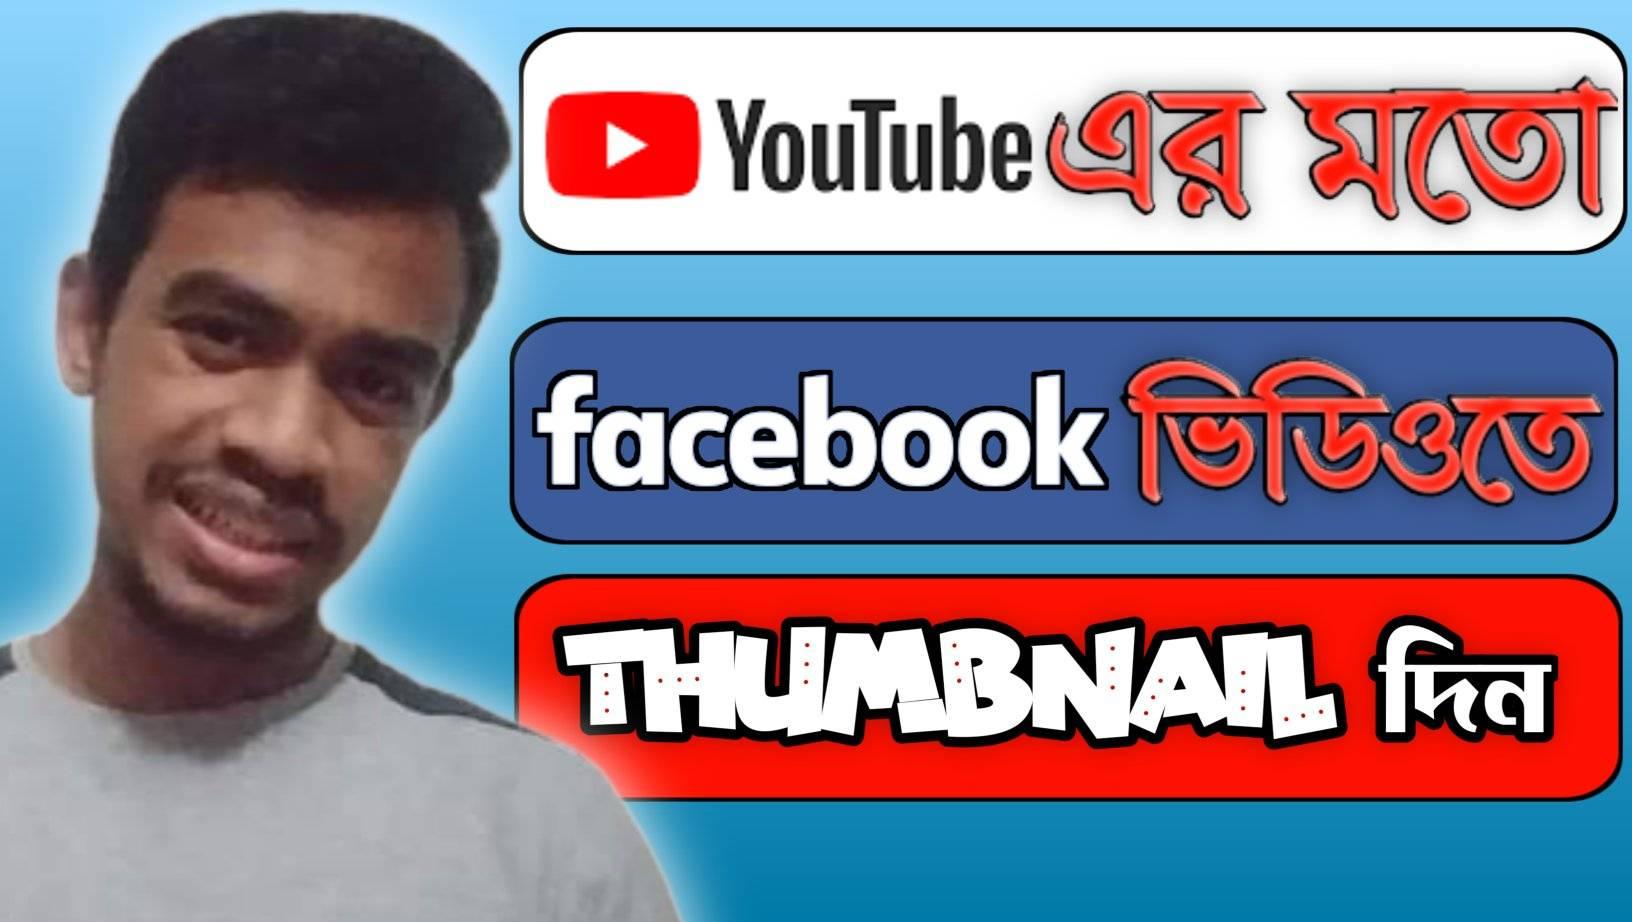 Facebook ভিডিওতে Thumbnail দিন কয়েক সেকেন্ডে